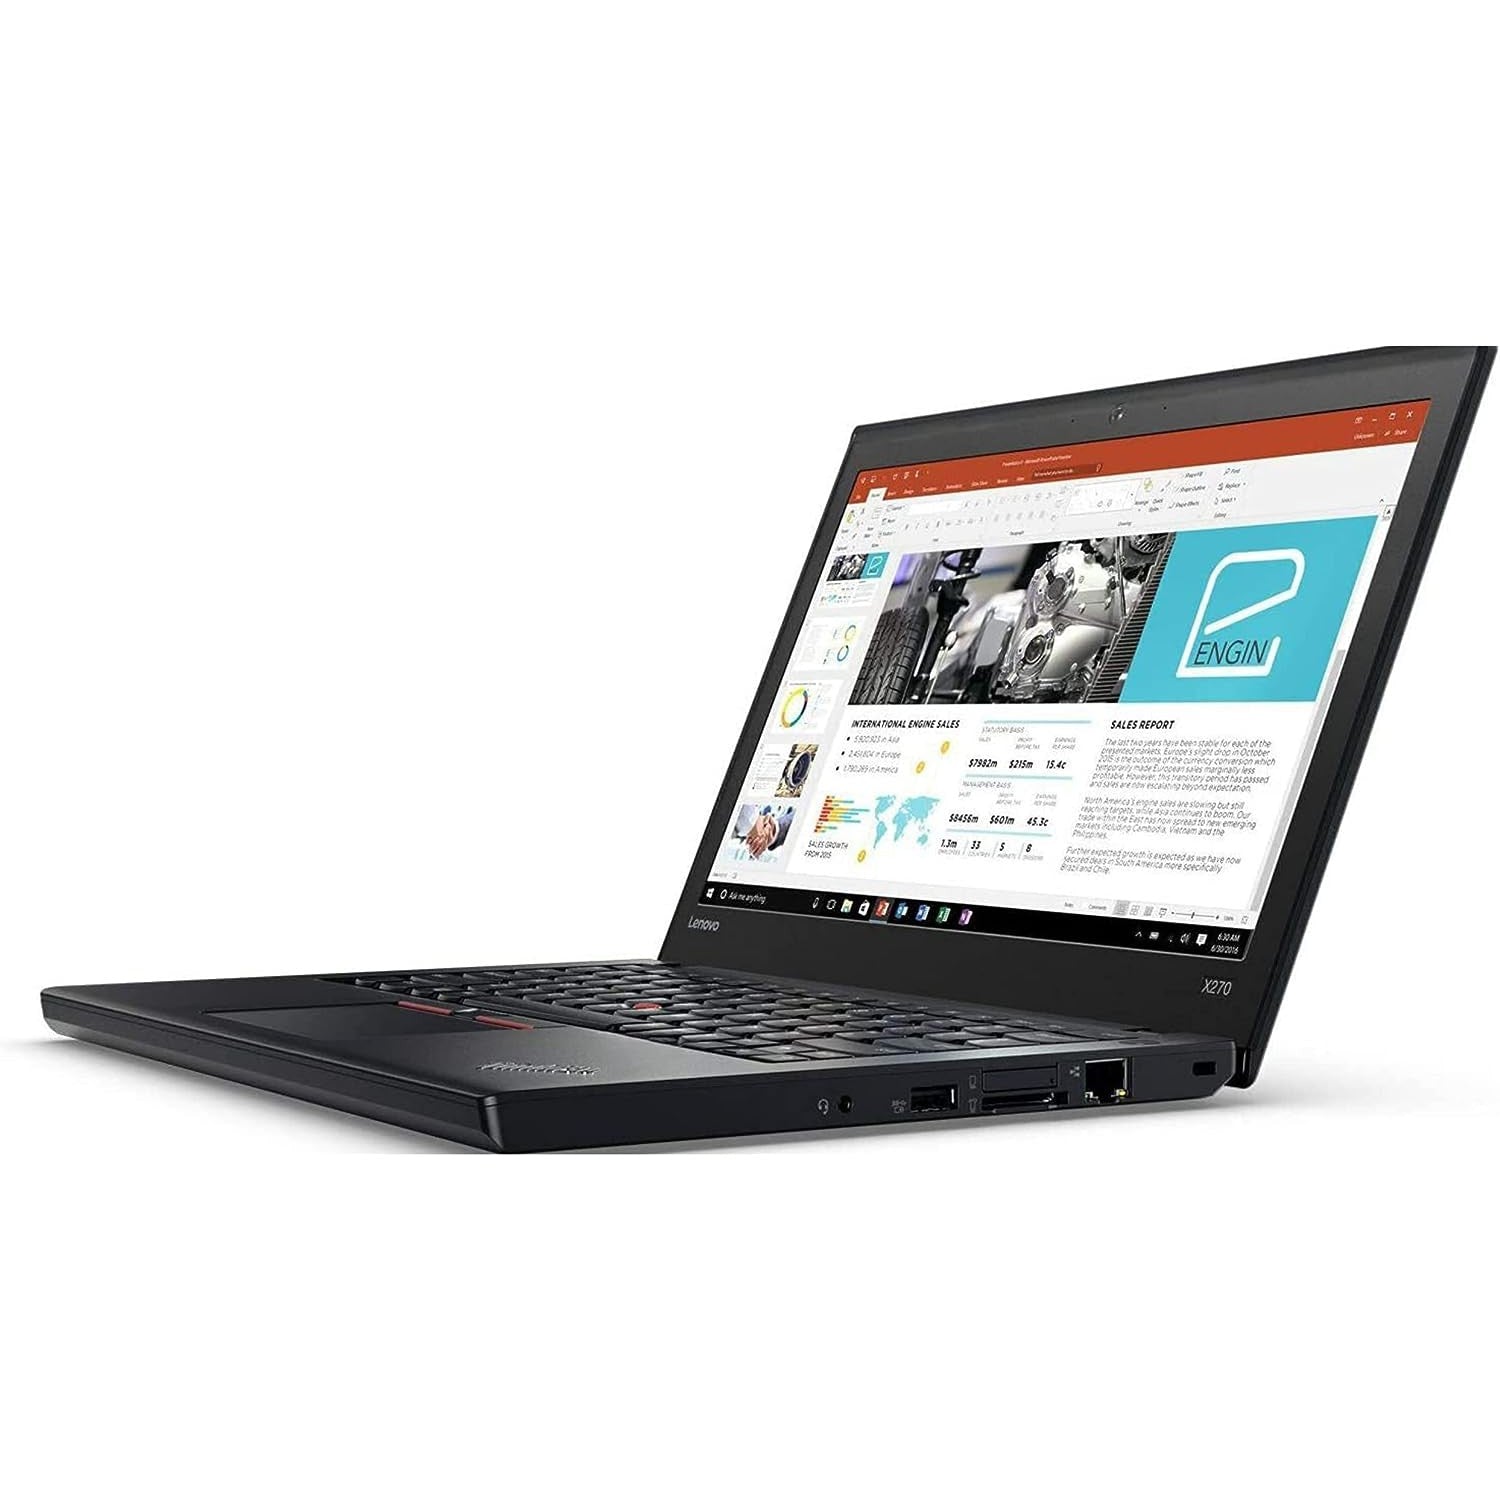 Lenovo ThinkPad X280 Intel Core i5 8GB RAM 256GB SSD 12.5